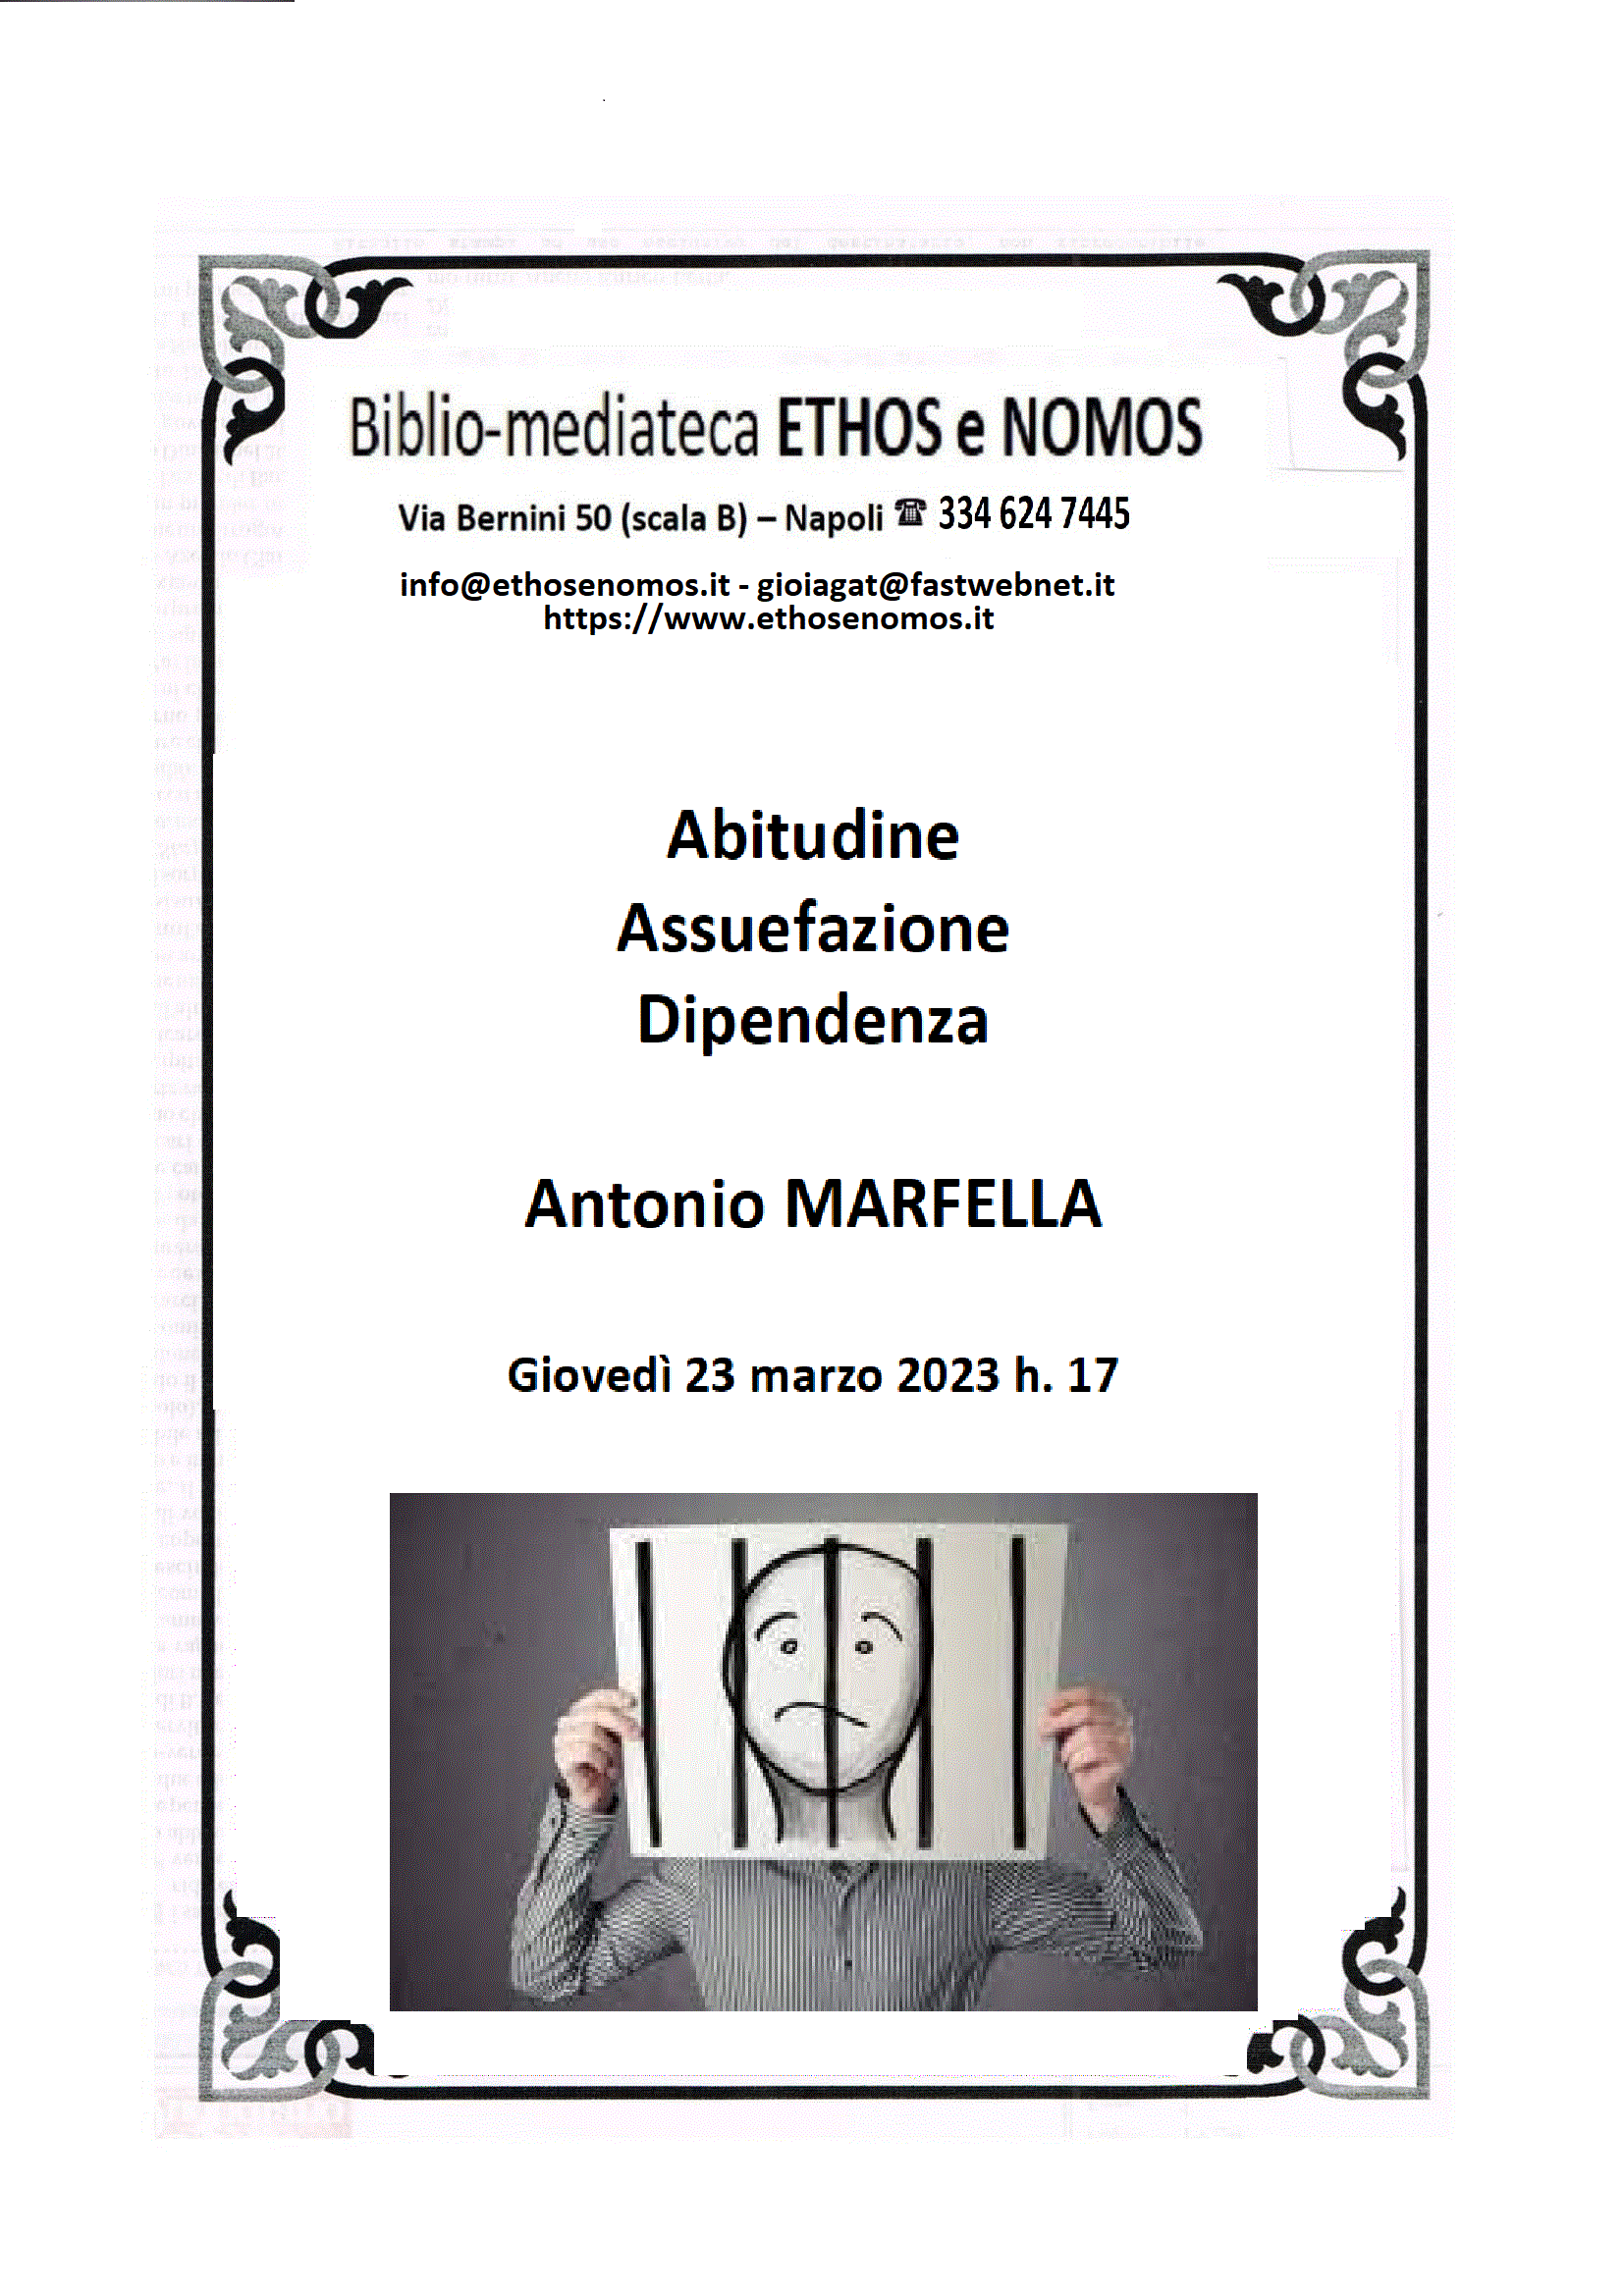 Antonio MARFELLA - Abitudine assuefazione dipendenza